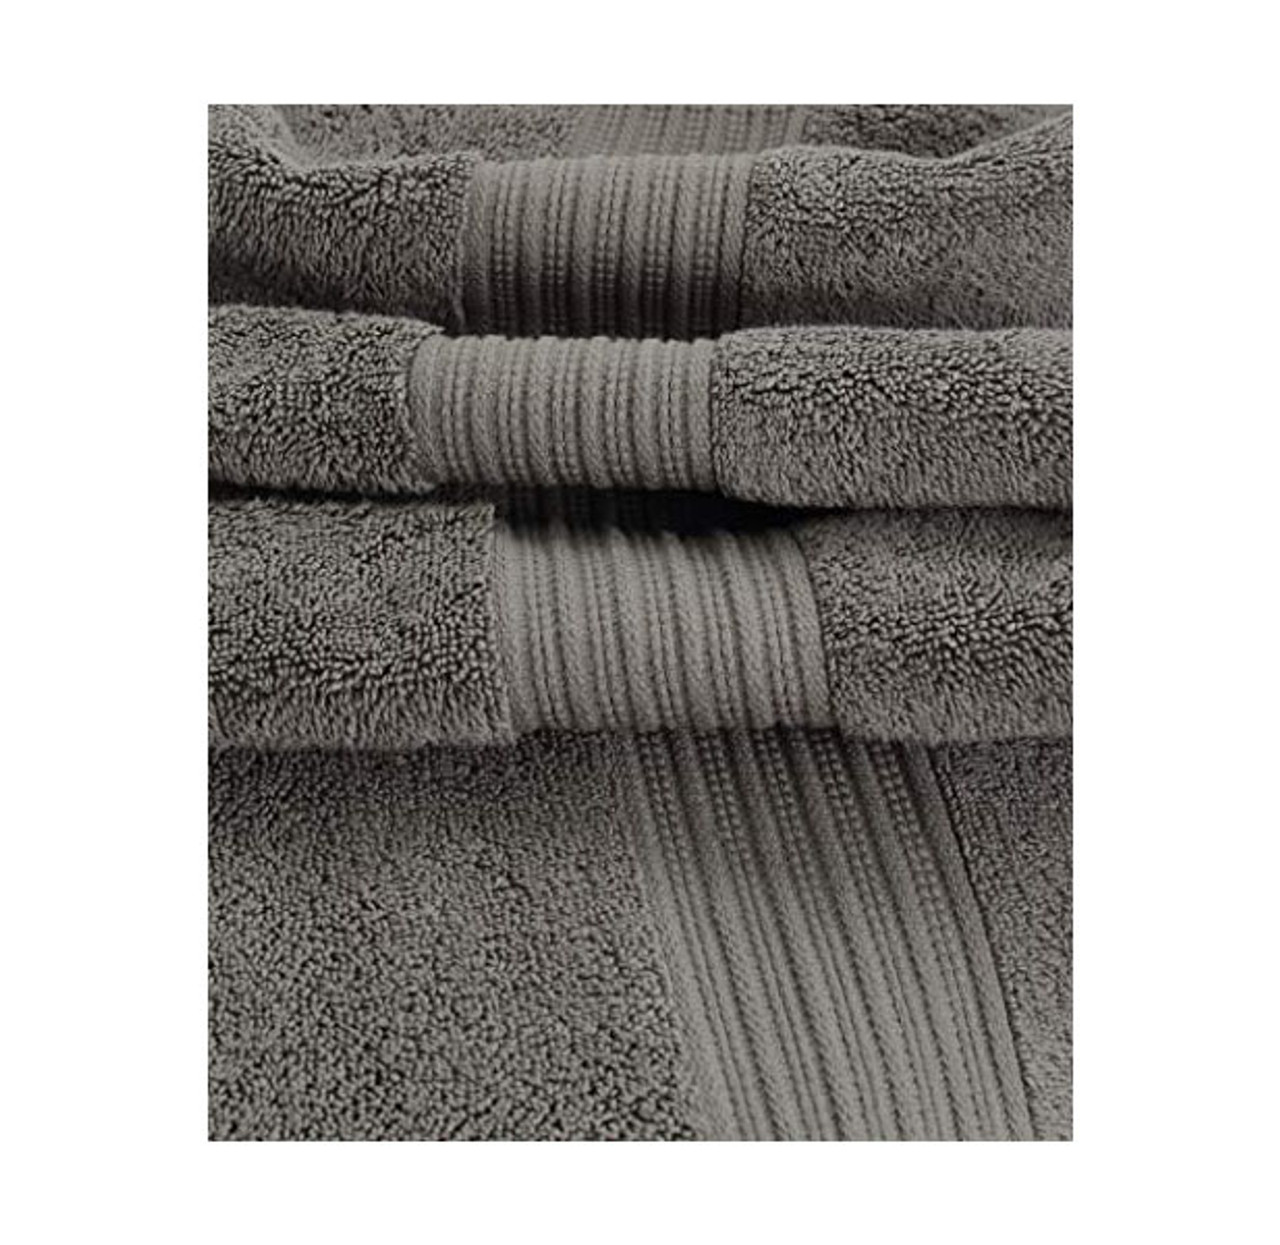 Divine Home 6-Piece 100% Cotton Luxury Towel Set product image